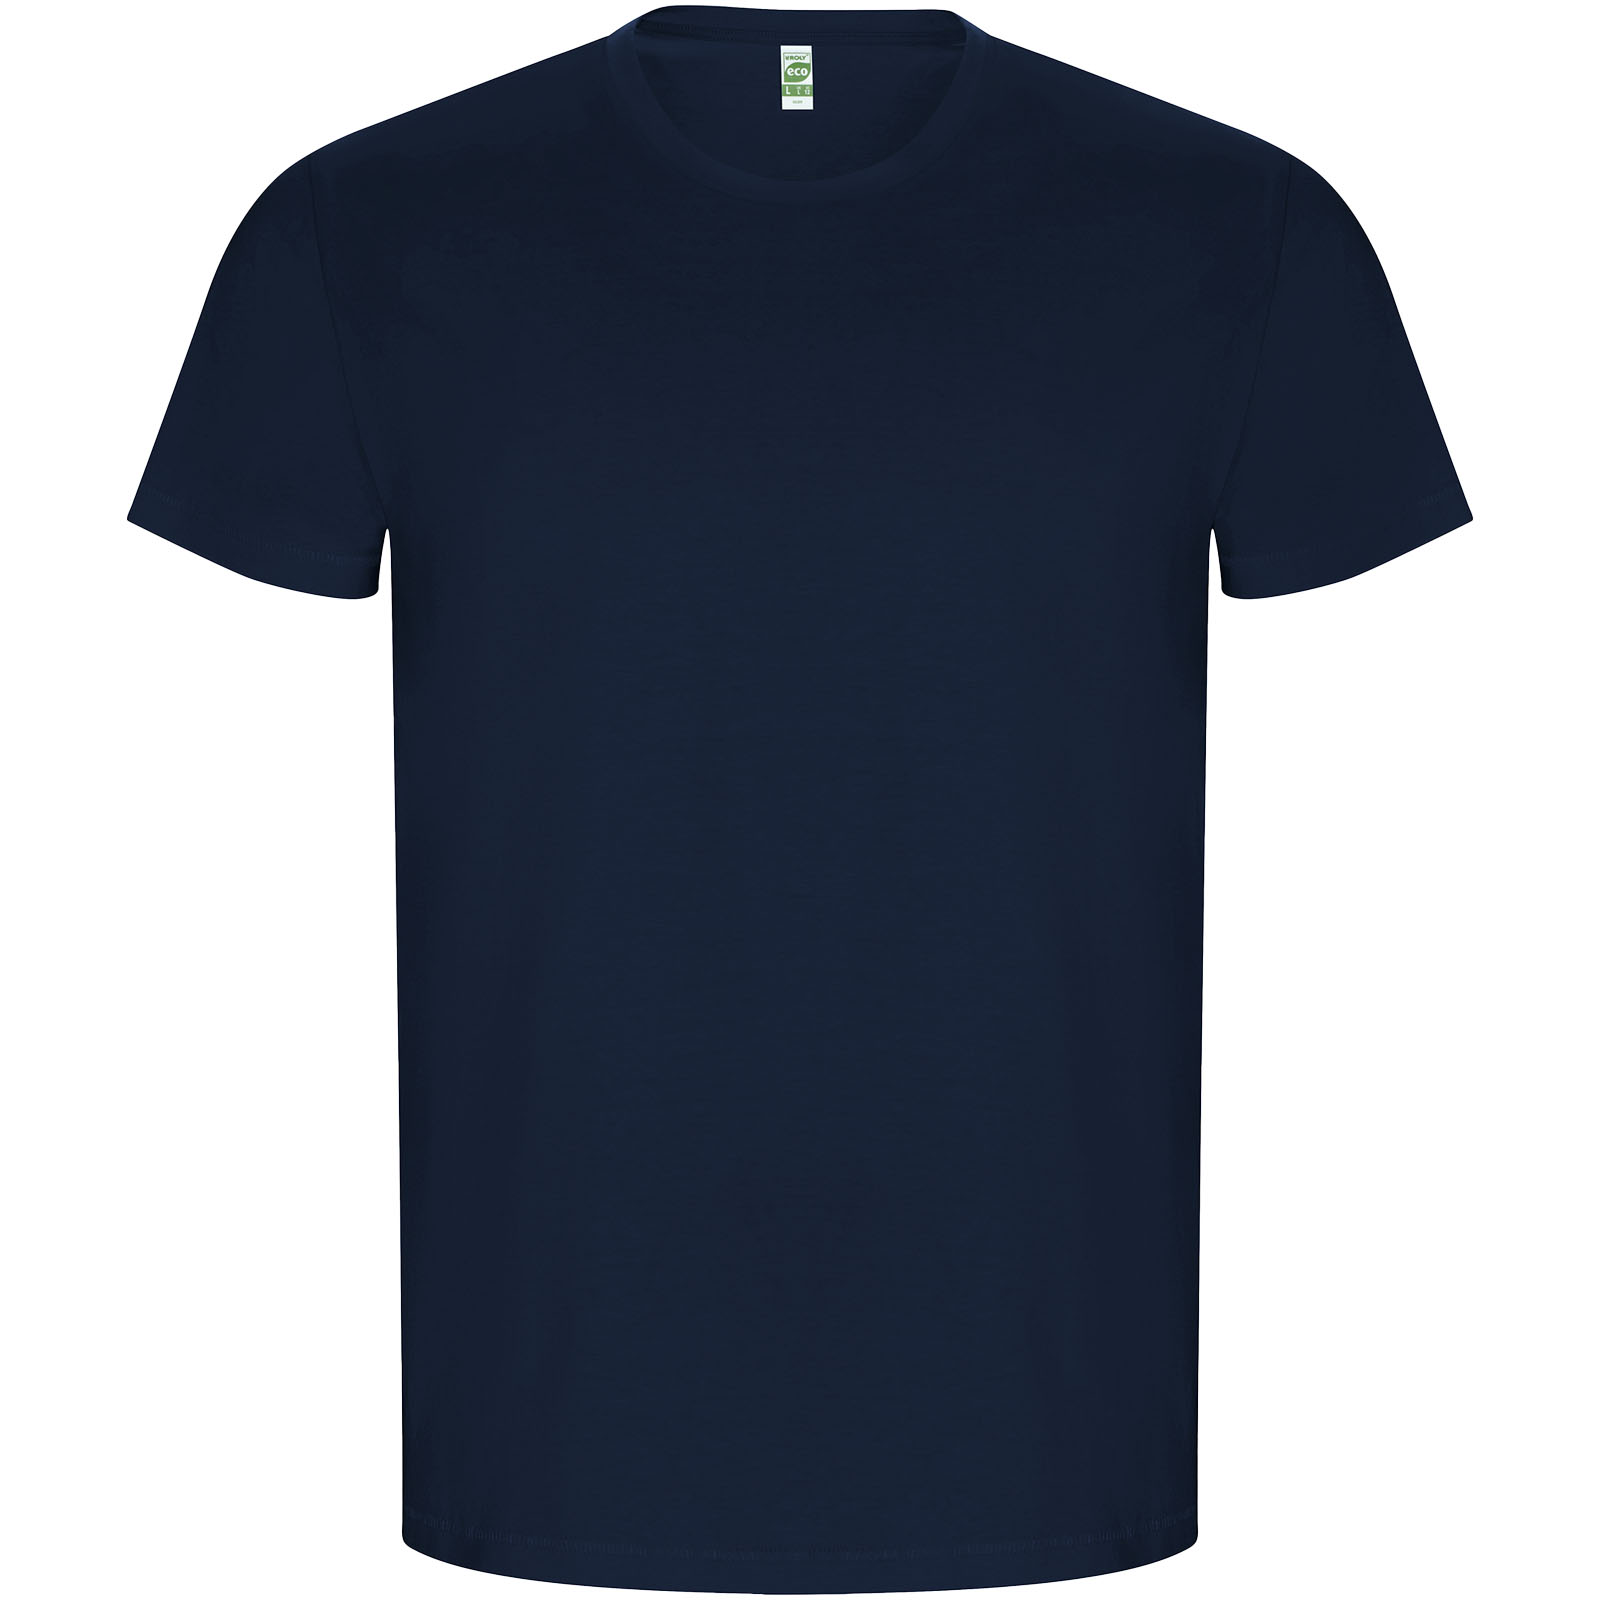 Advertising T-shirts - Golden short sleeve men's t-shirt - 0